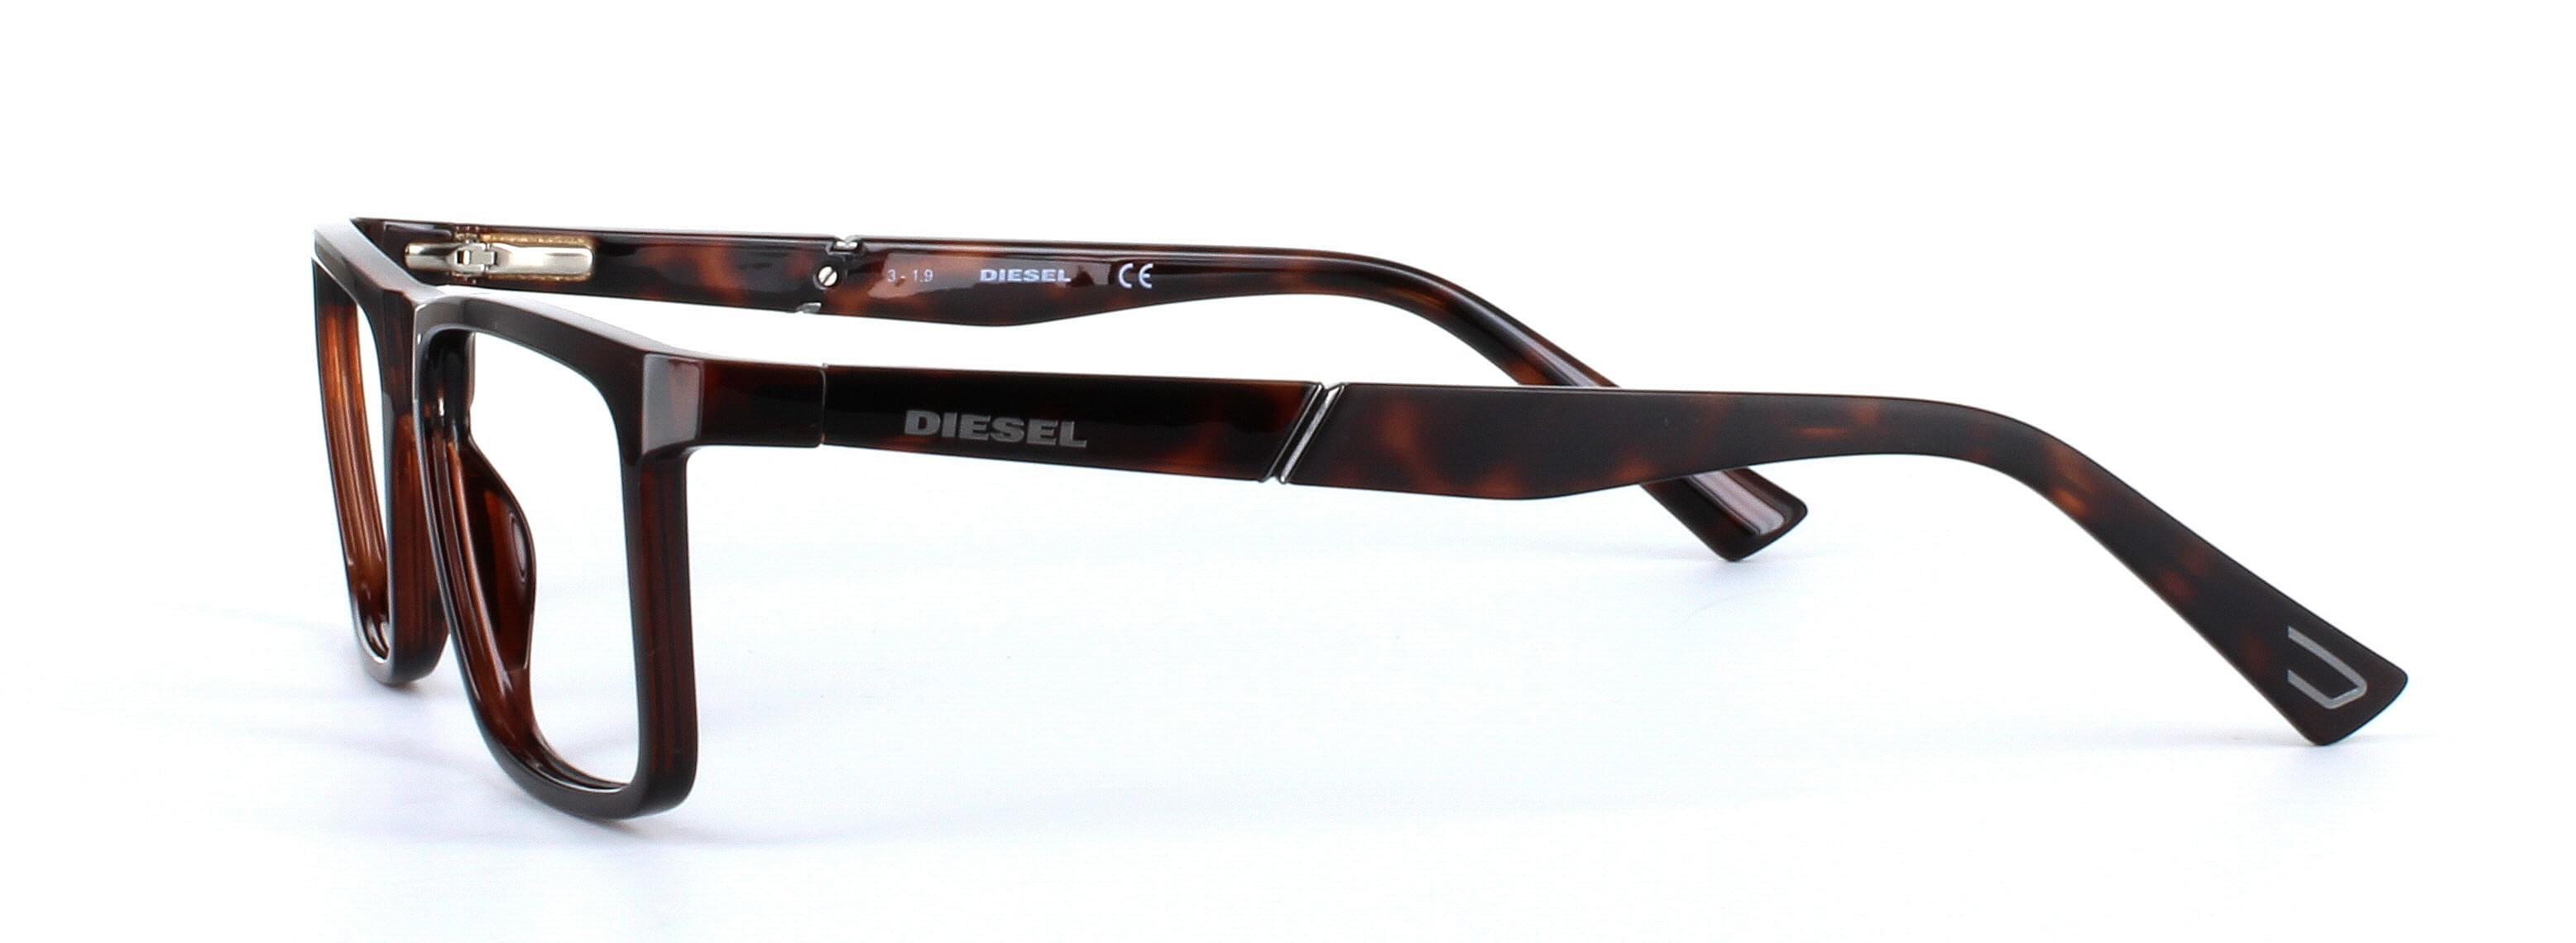 Diesel (DL5269-052) Brown Full Rim Rectangular Acetate Glasses - Image View 2